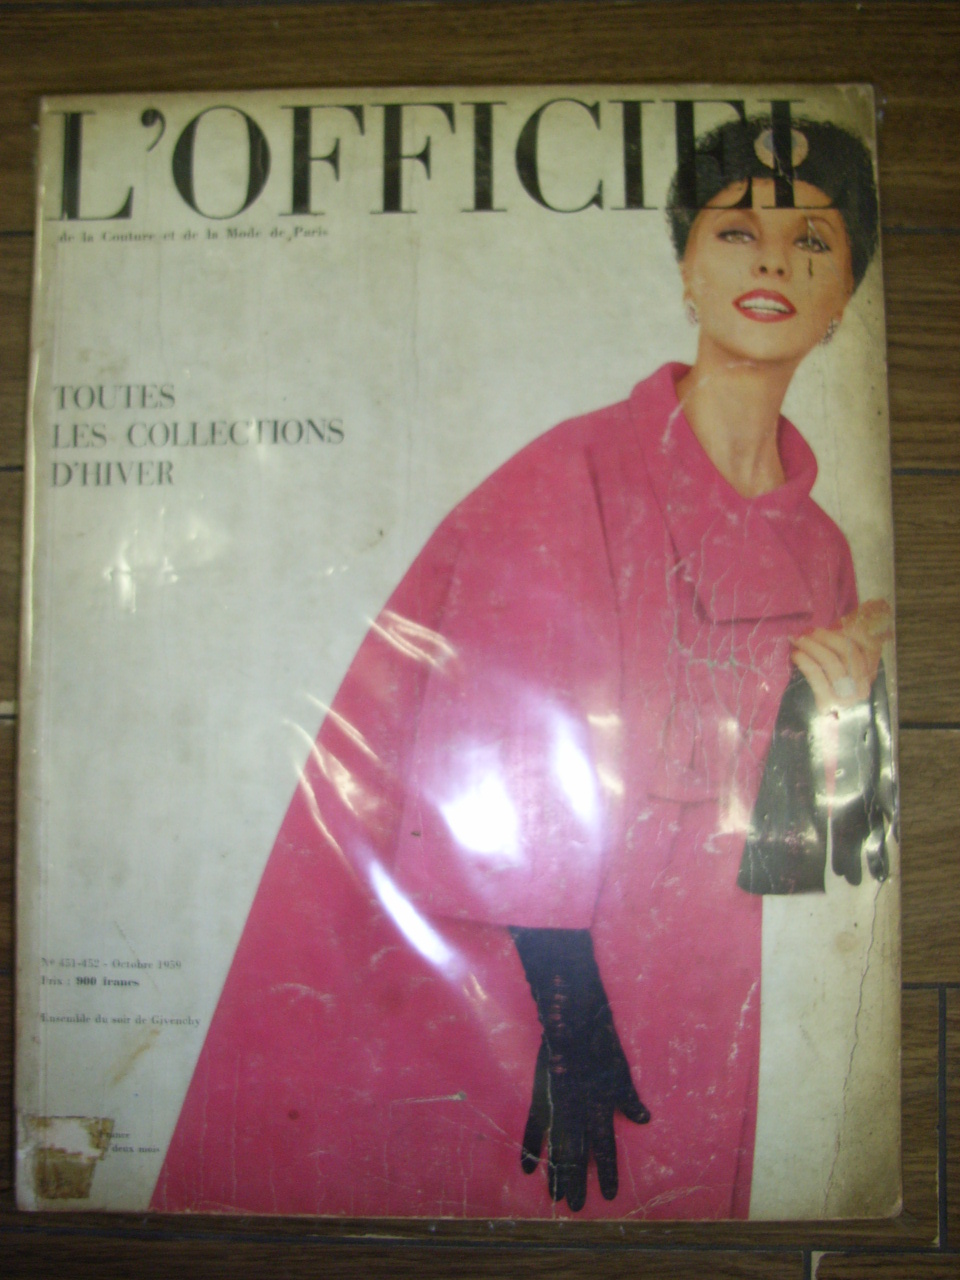 L’OFFICIEL Octobre 1962年 ロフィシェル ヴィンテージ雑誌